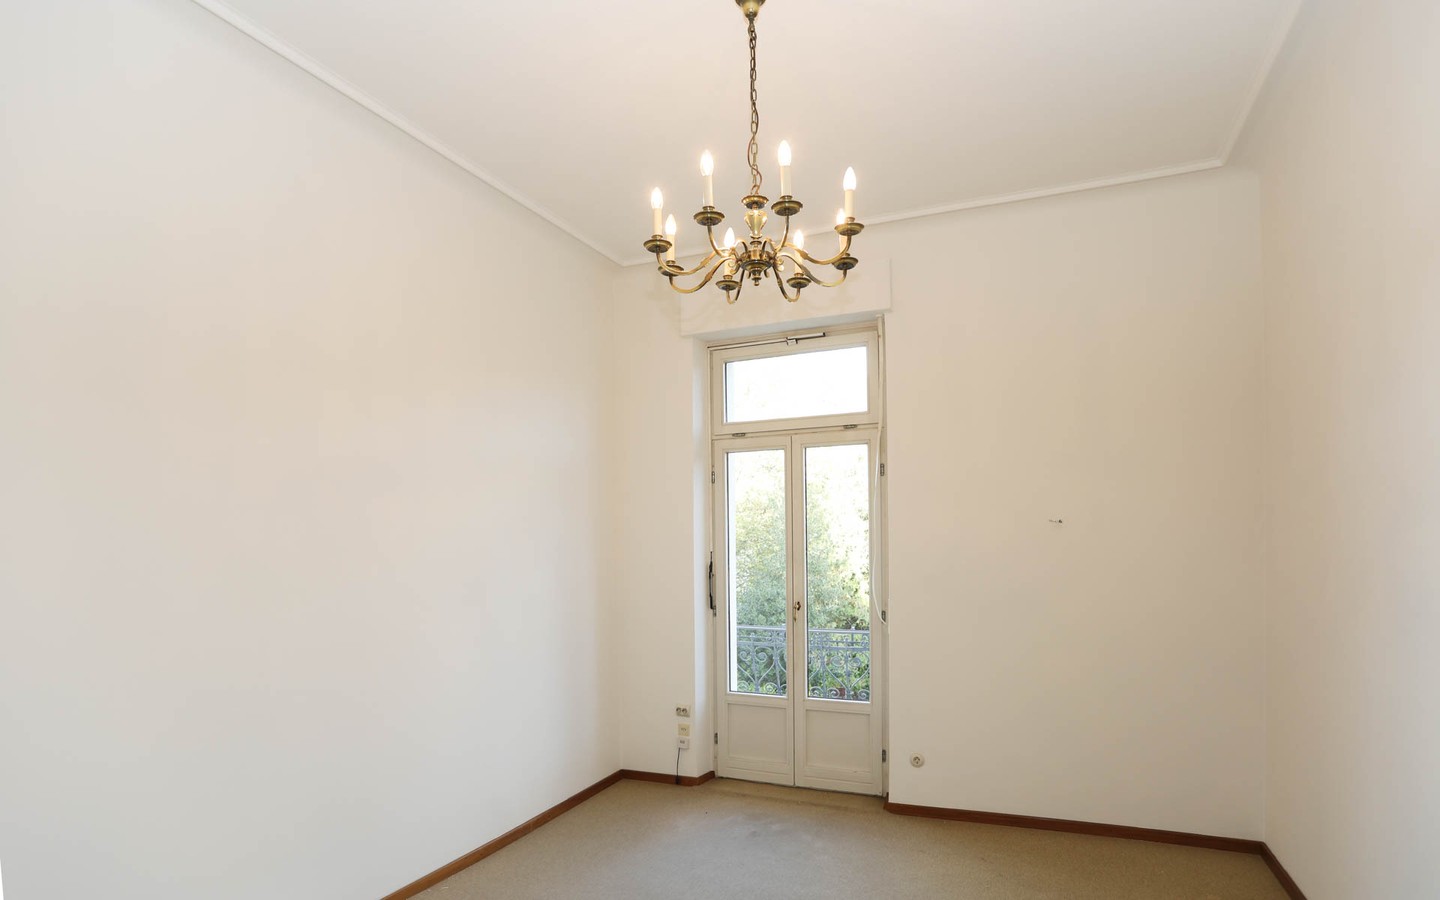 Zimmer 1. OG - Vermächtnis eines großen Bauherrn: Villa Klose, Herzstück des Englischen Viertels in Neuenheim